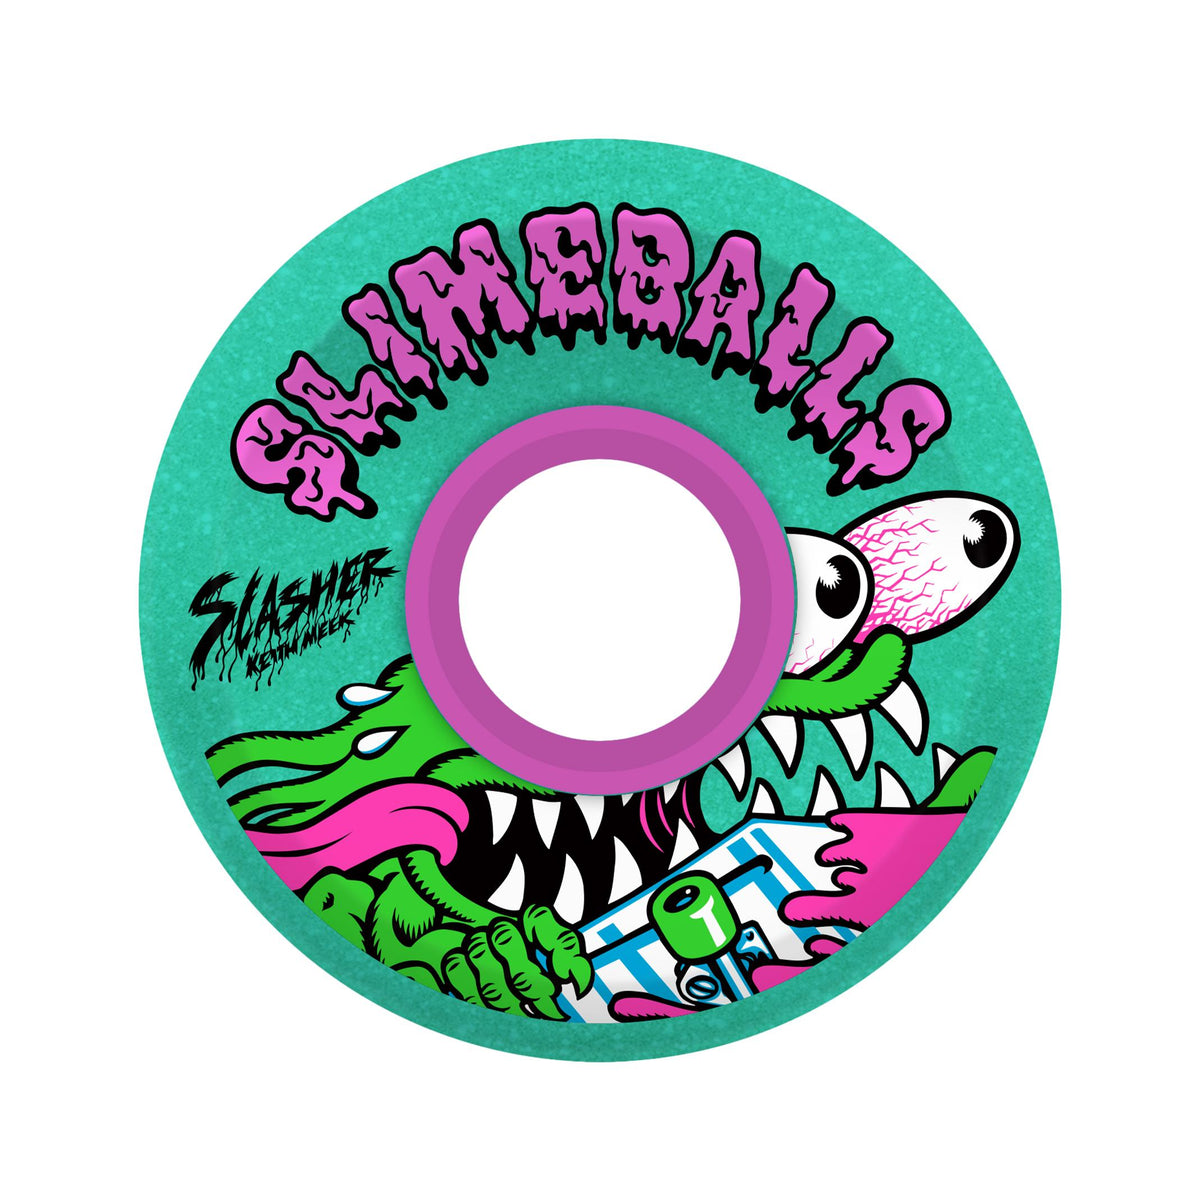 Slime Balls 60mm Meek Slasher OG Green Glitter 78a Wheels - Venue Skateboards